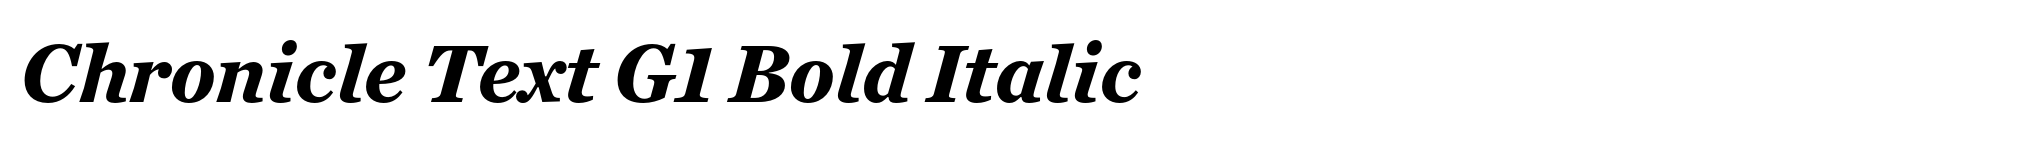 Chronicle Text G1 Bold Italic image